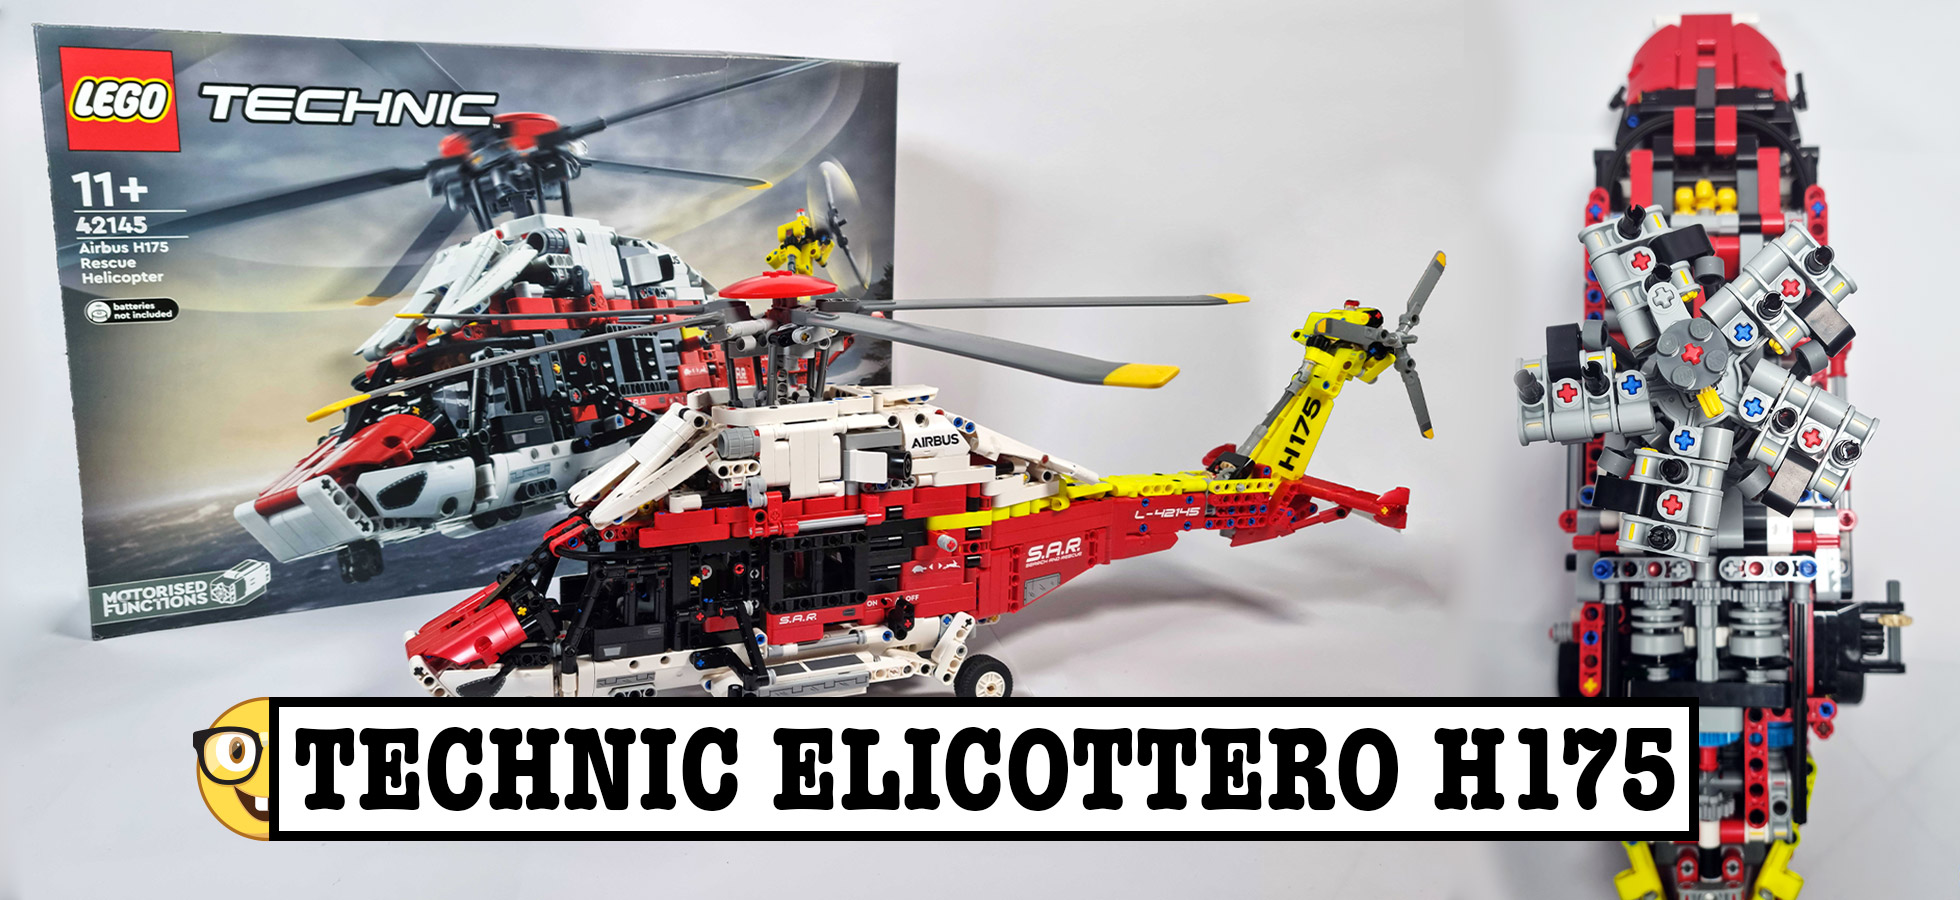 Lego Technic Elicottero di Salvataggio Airbus H175 LEGO - 42145